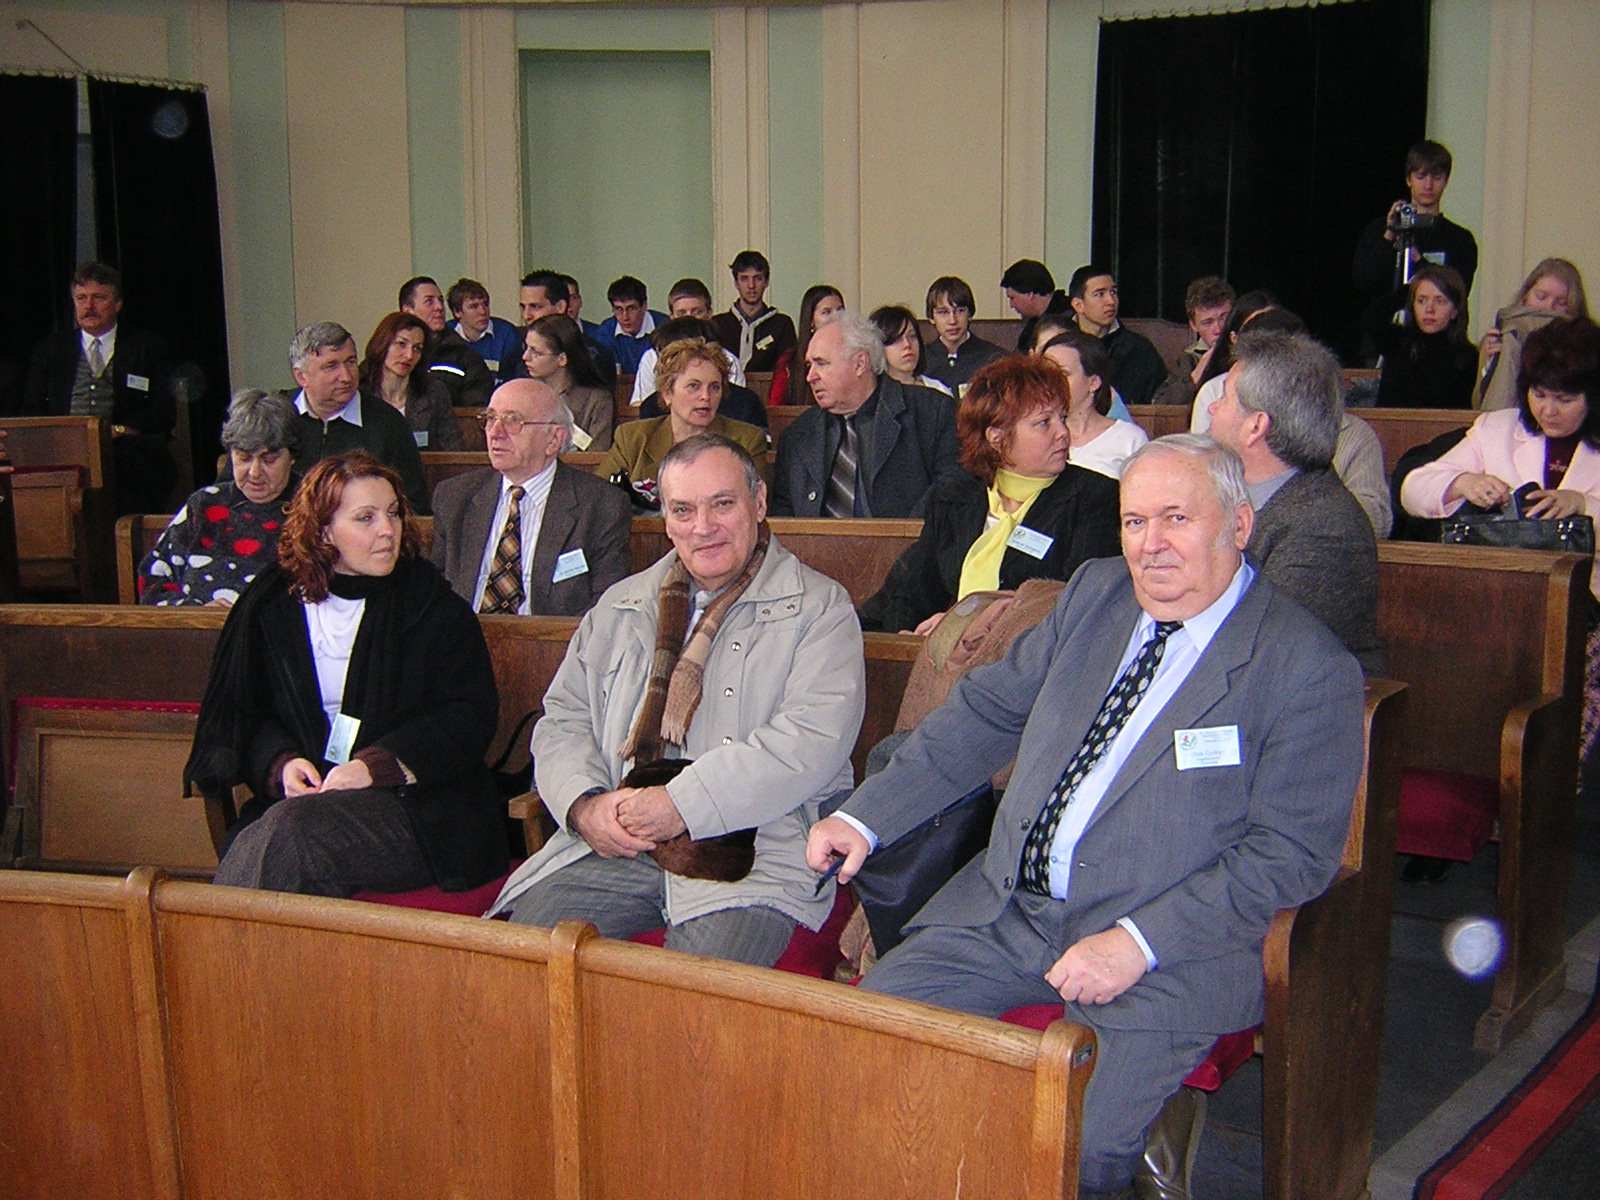 A megnyitó résztvevői Egyedül a 2006-os, zentai Nemzetközi Magyar Matematikaversenyen volt alkalmam részt venni, de azóta is szívesen emlékszem vissza arra a néhány napra.